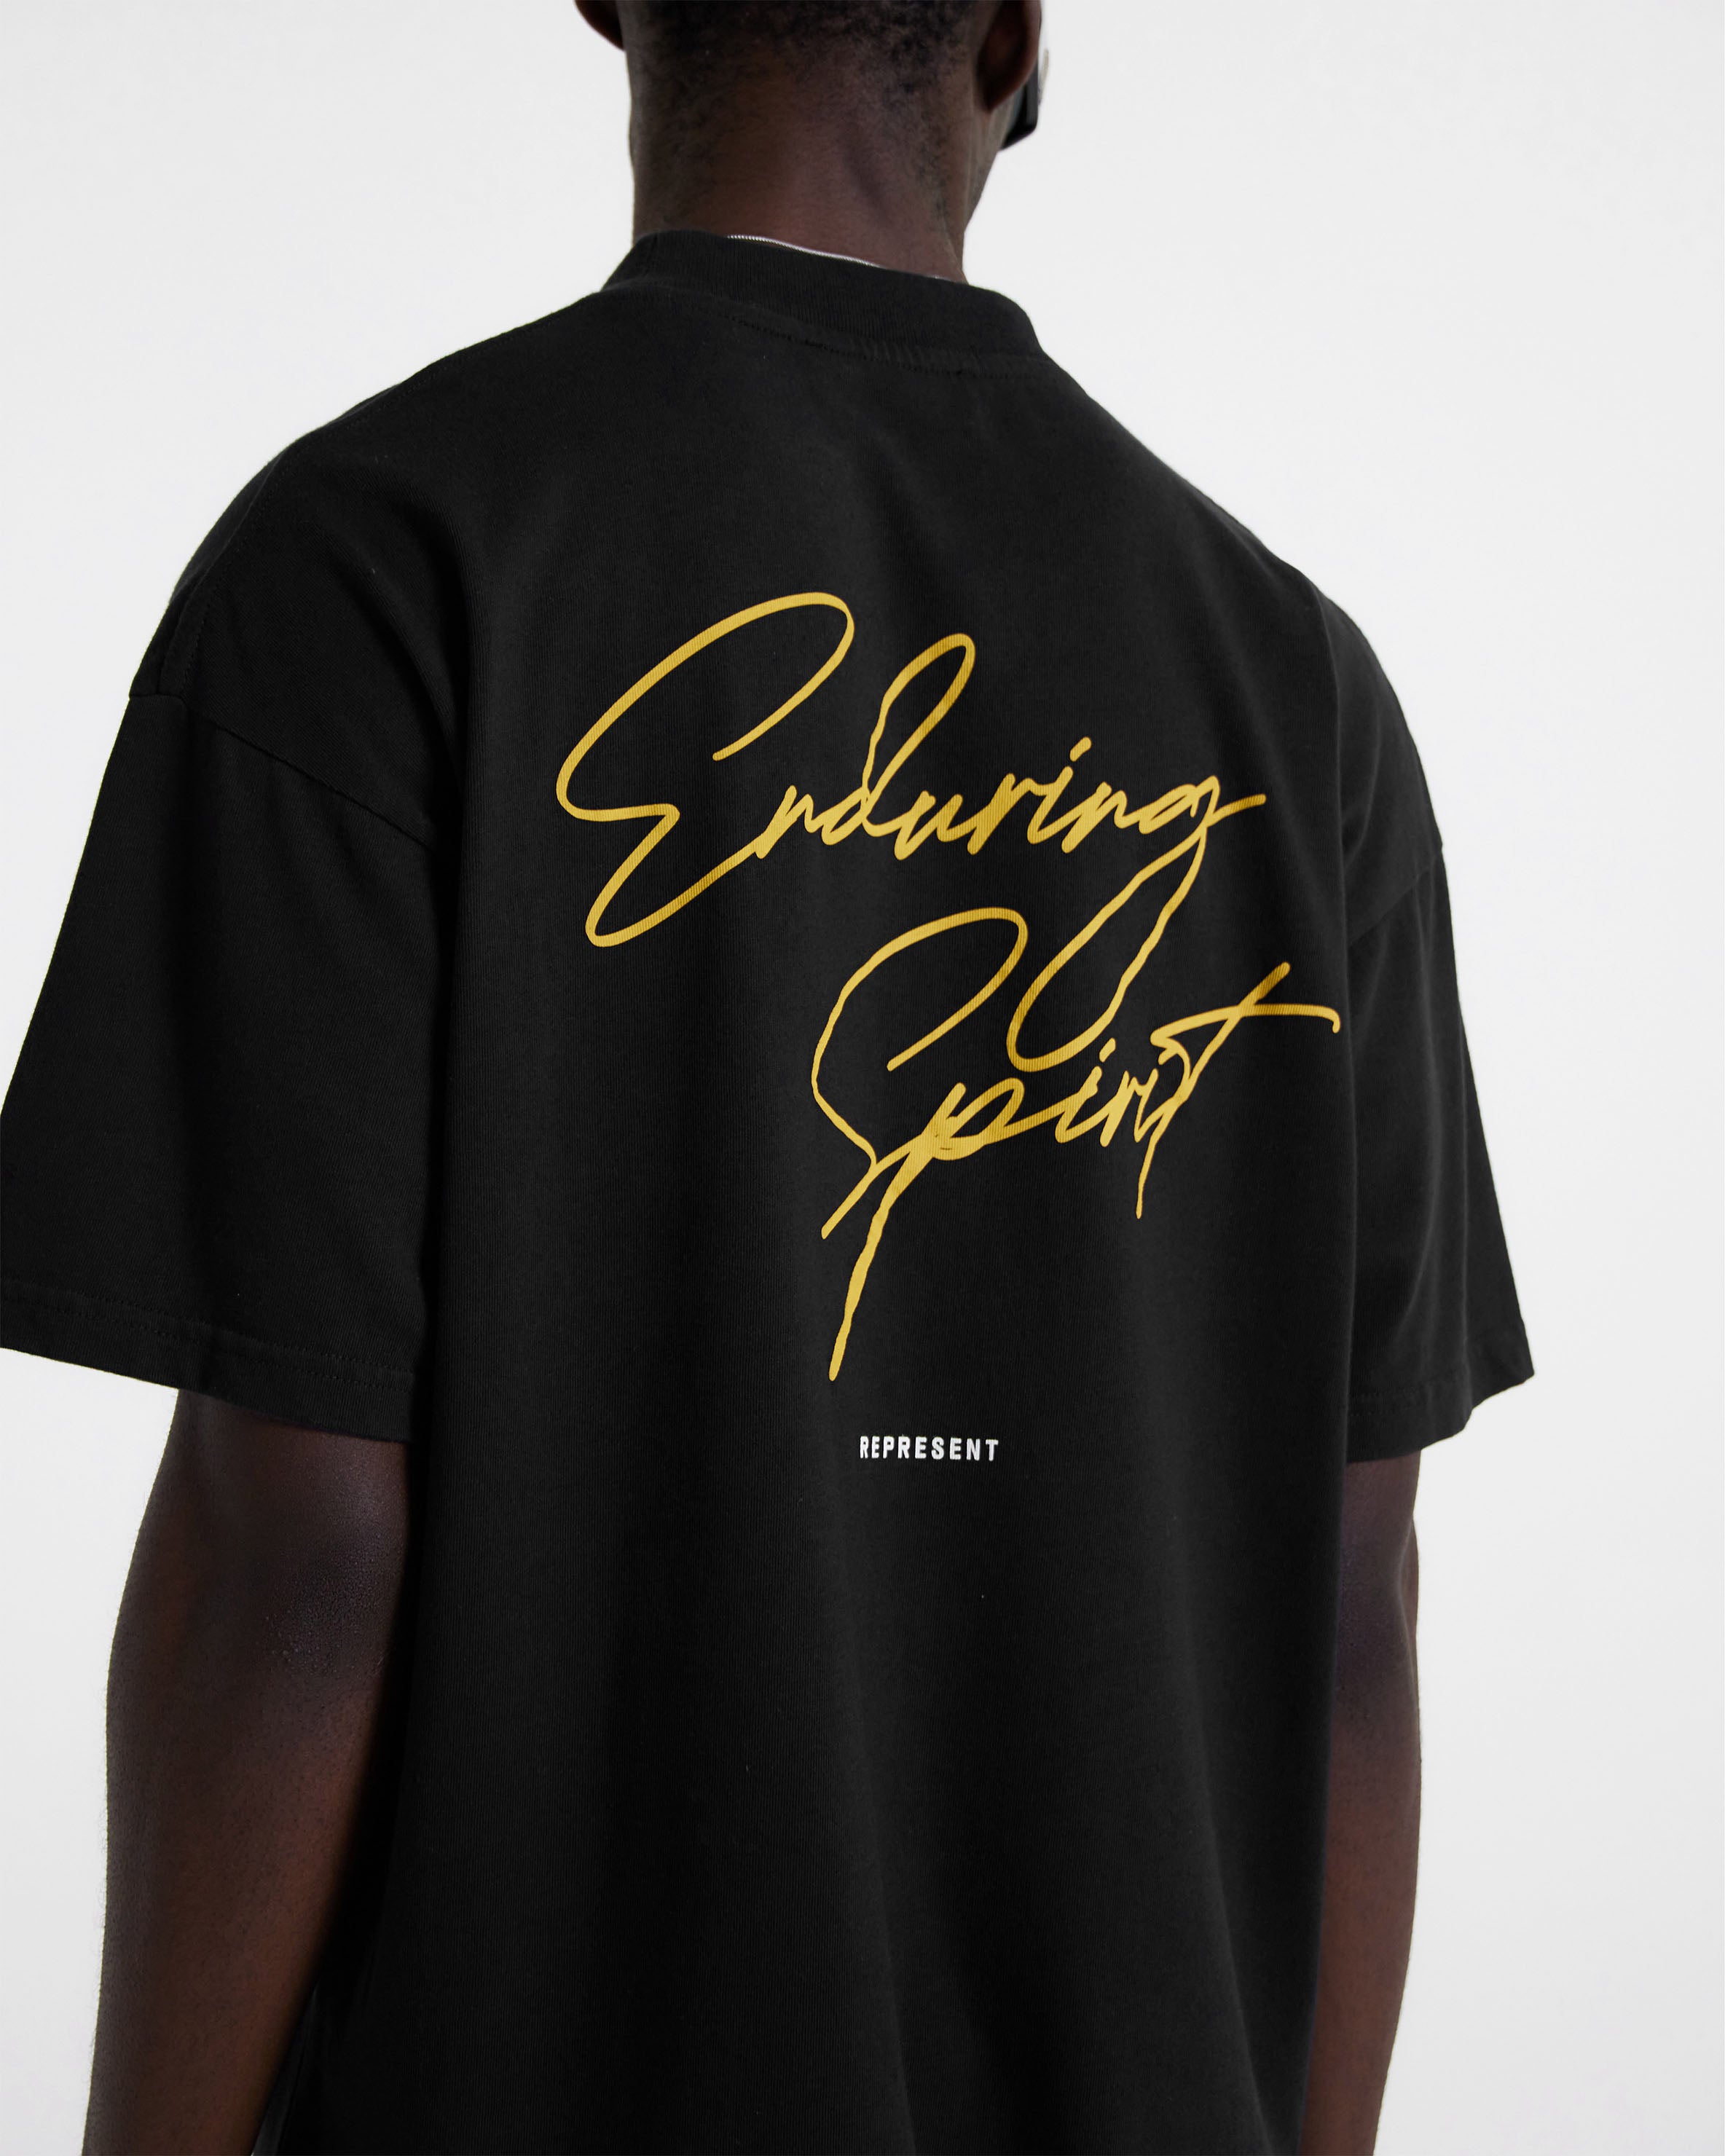 Enduring Spirit T-Shirt - Off Black